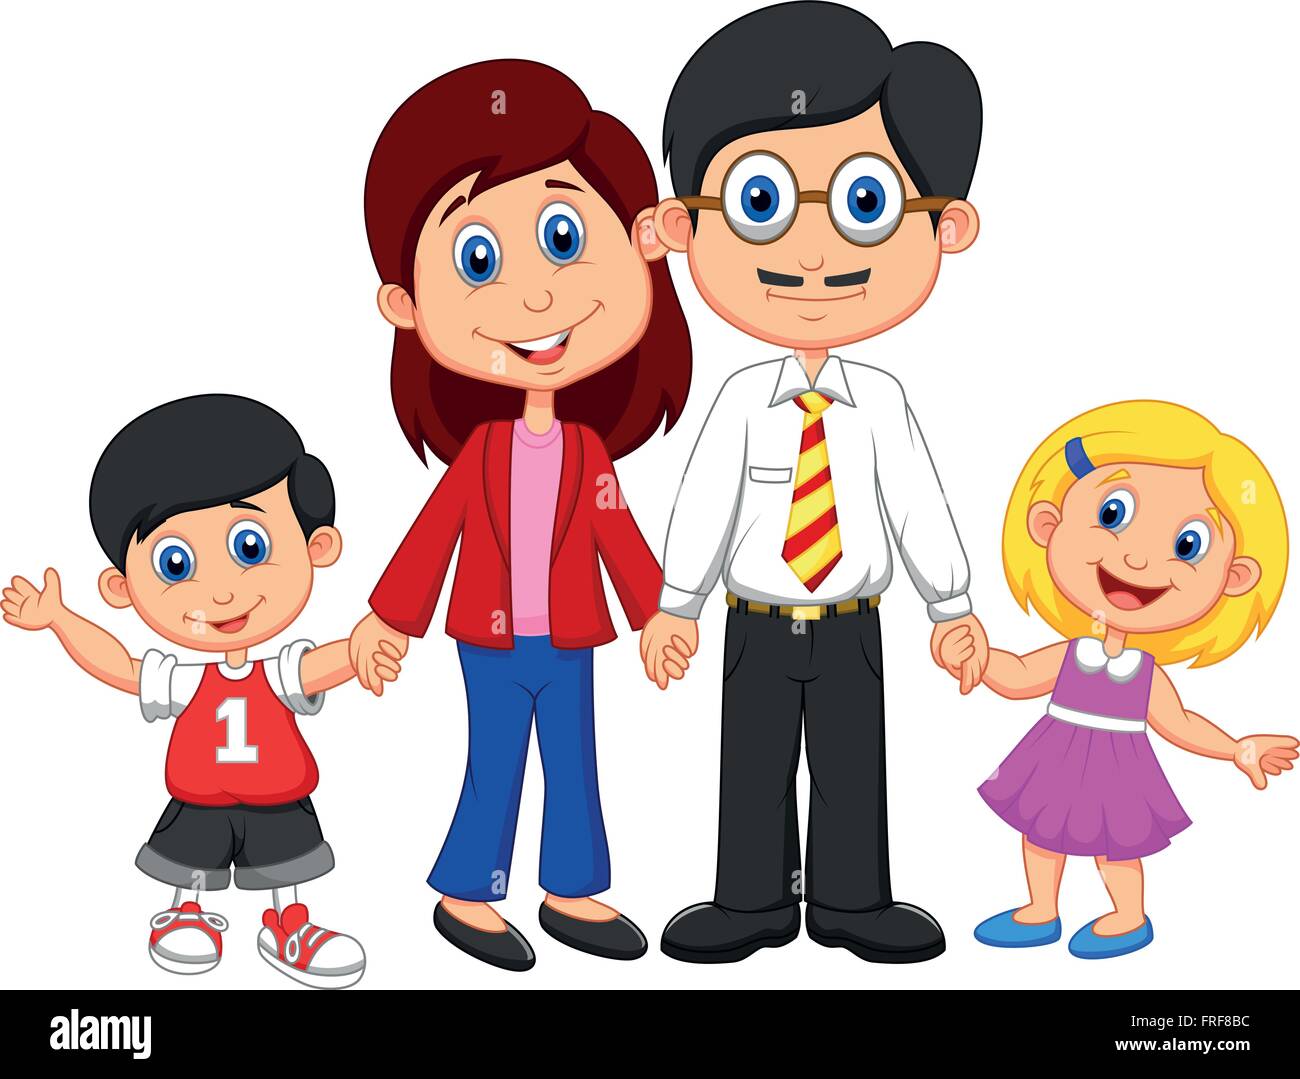 Happy Family Cartoon Stock Vector Image Art Alamy Family cartoon stock photos and images (151,195). https www alamy com stock photo happy family cartoon 100524800 html